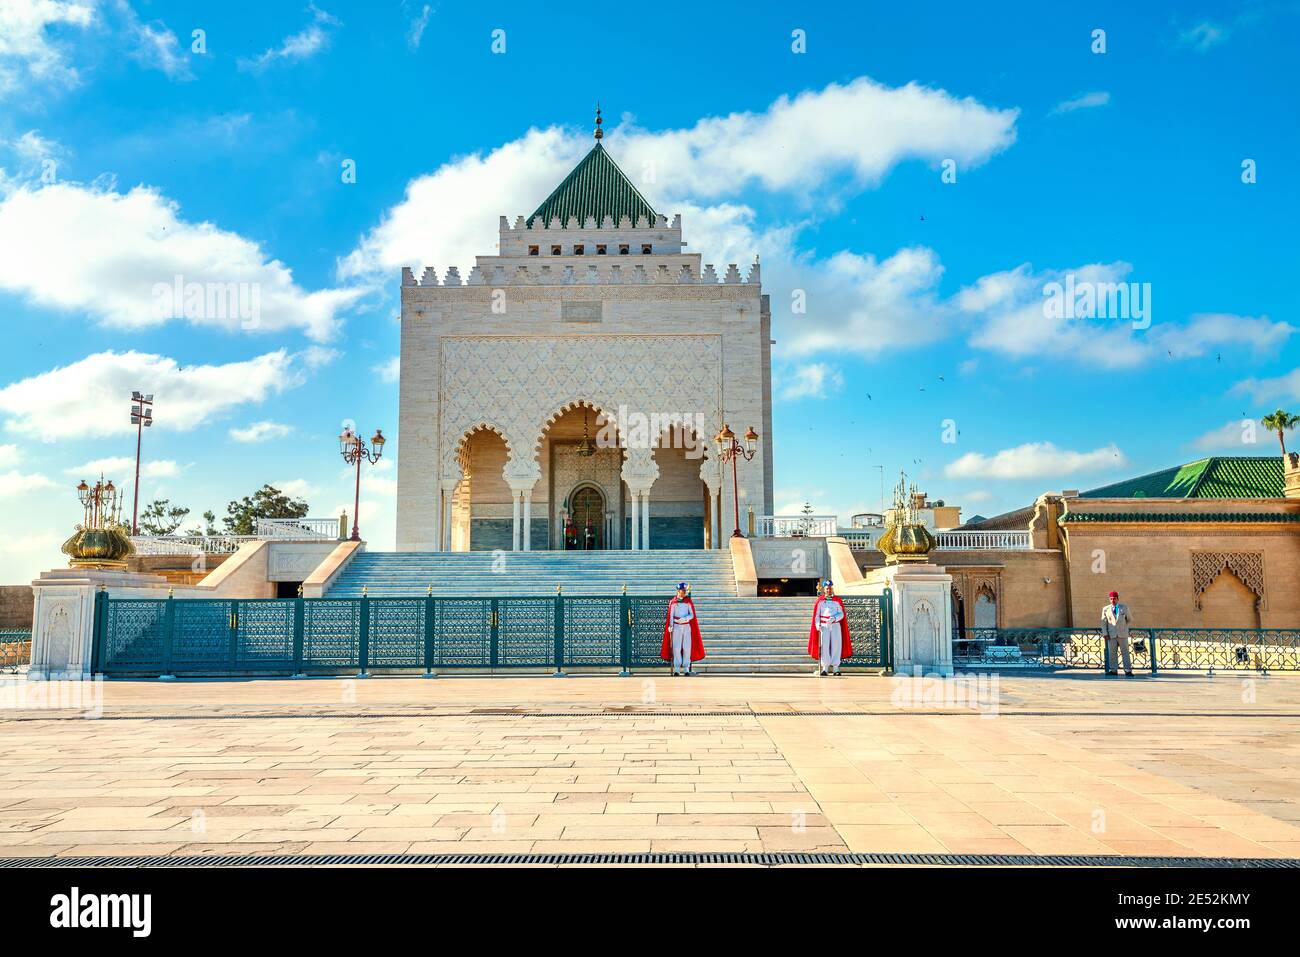 Mausoleo con guardias en la tumba del rey Mohammed V en el patio de la Mezquita incompleta. Rabat, Marruecos, África del Norte Foto de stock